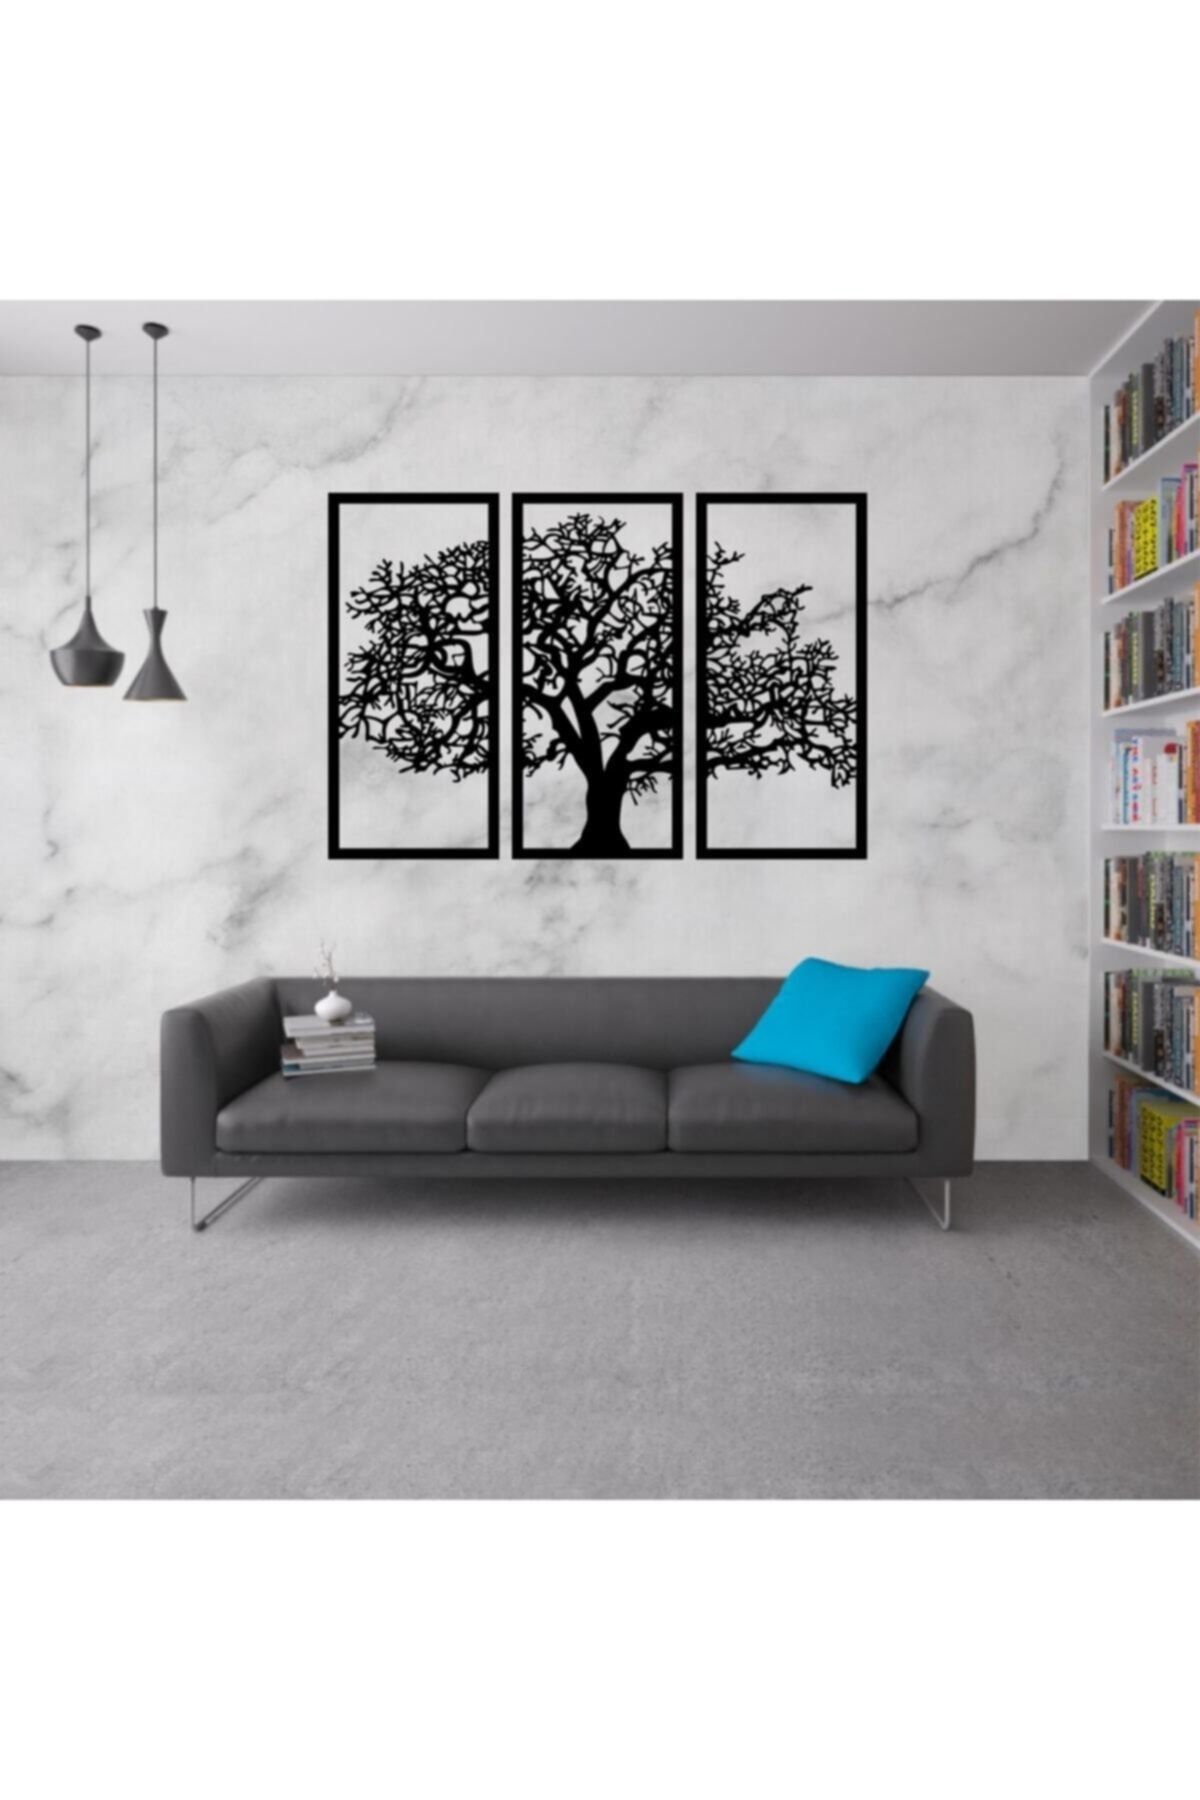 Genel Markalar 3'lü Ağaç Dekoratif Ahşap Tablo Duvar Süsü 58x85cm Ads5116